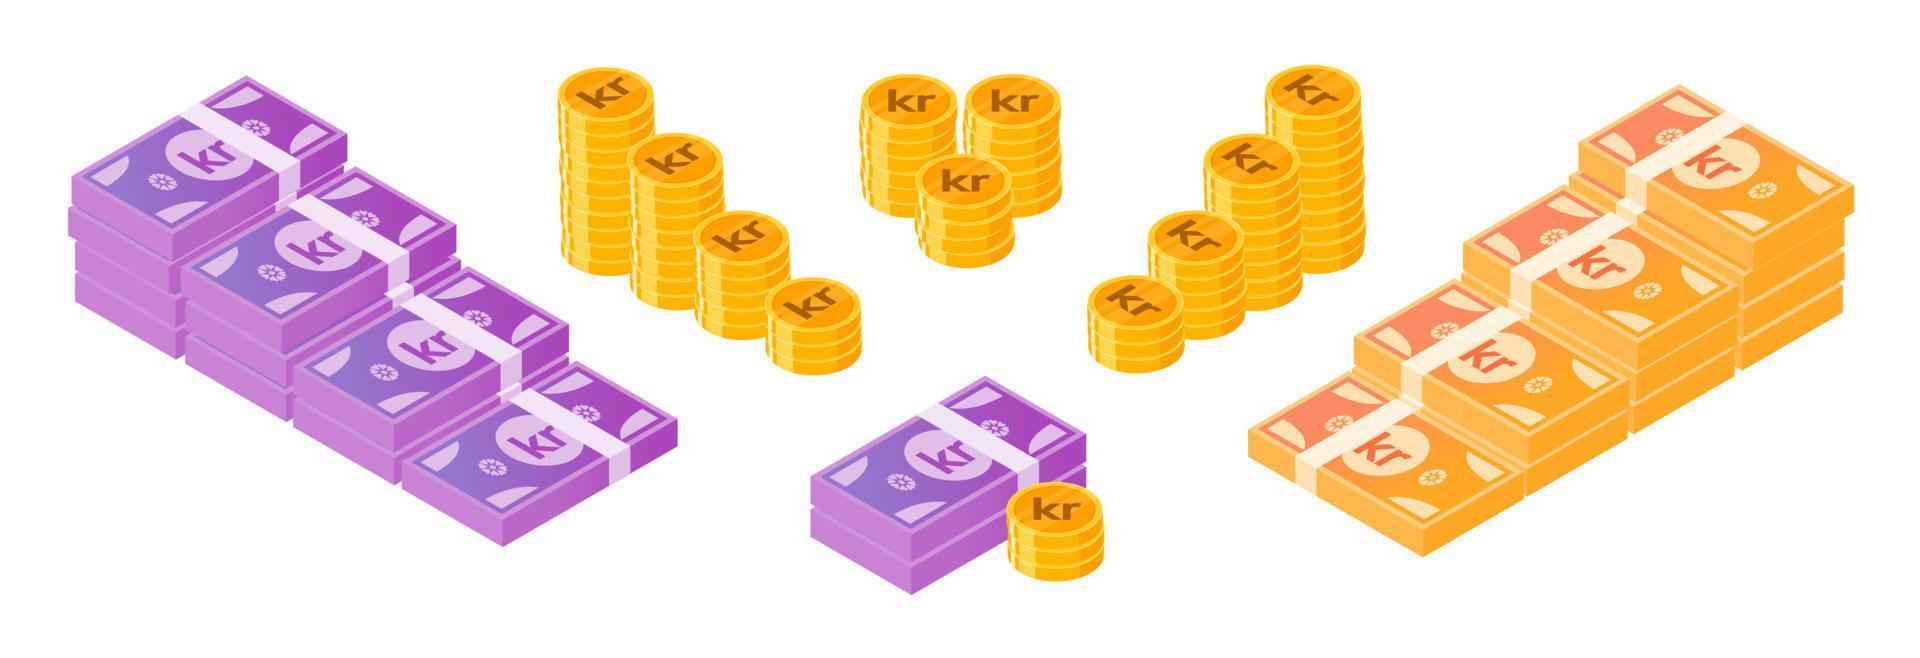 norwegische krone geld- und münzenbündelsatz vektor